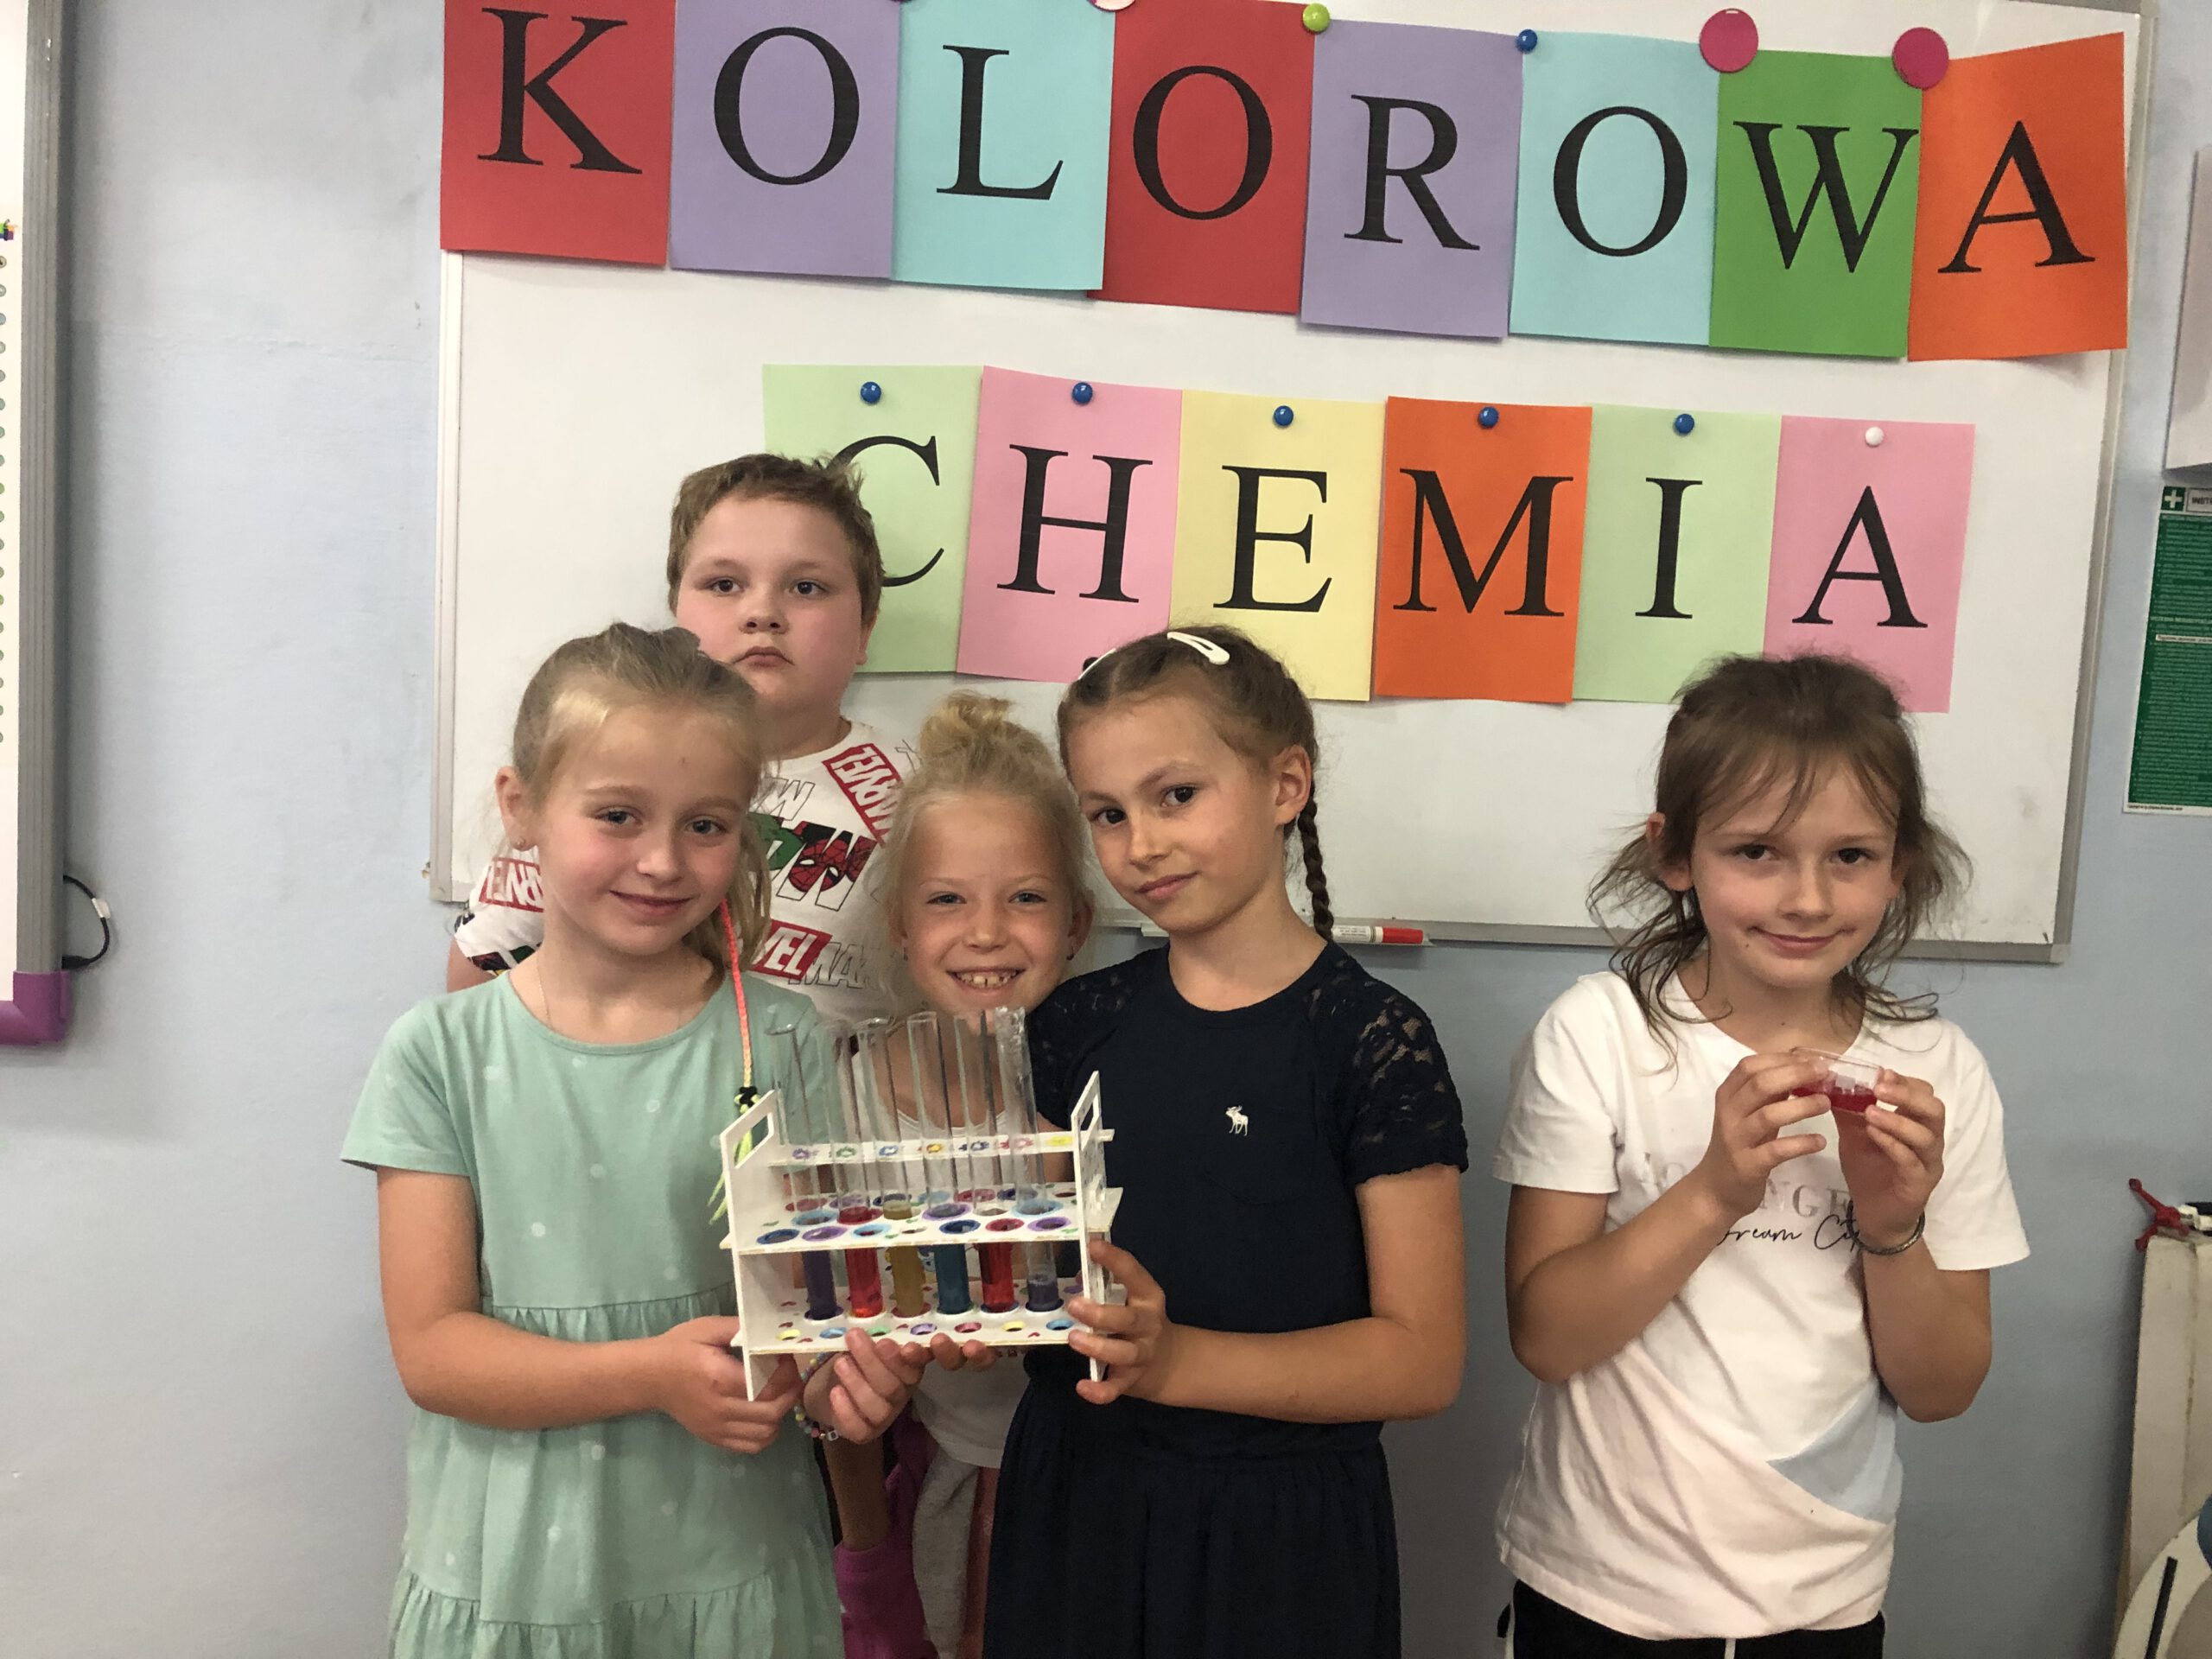 Chłopiec i cztery dziewczynki pozują do zdjęcia na tle napisu Kolorowa Chemia